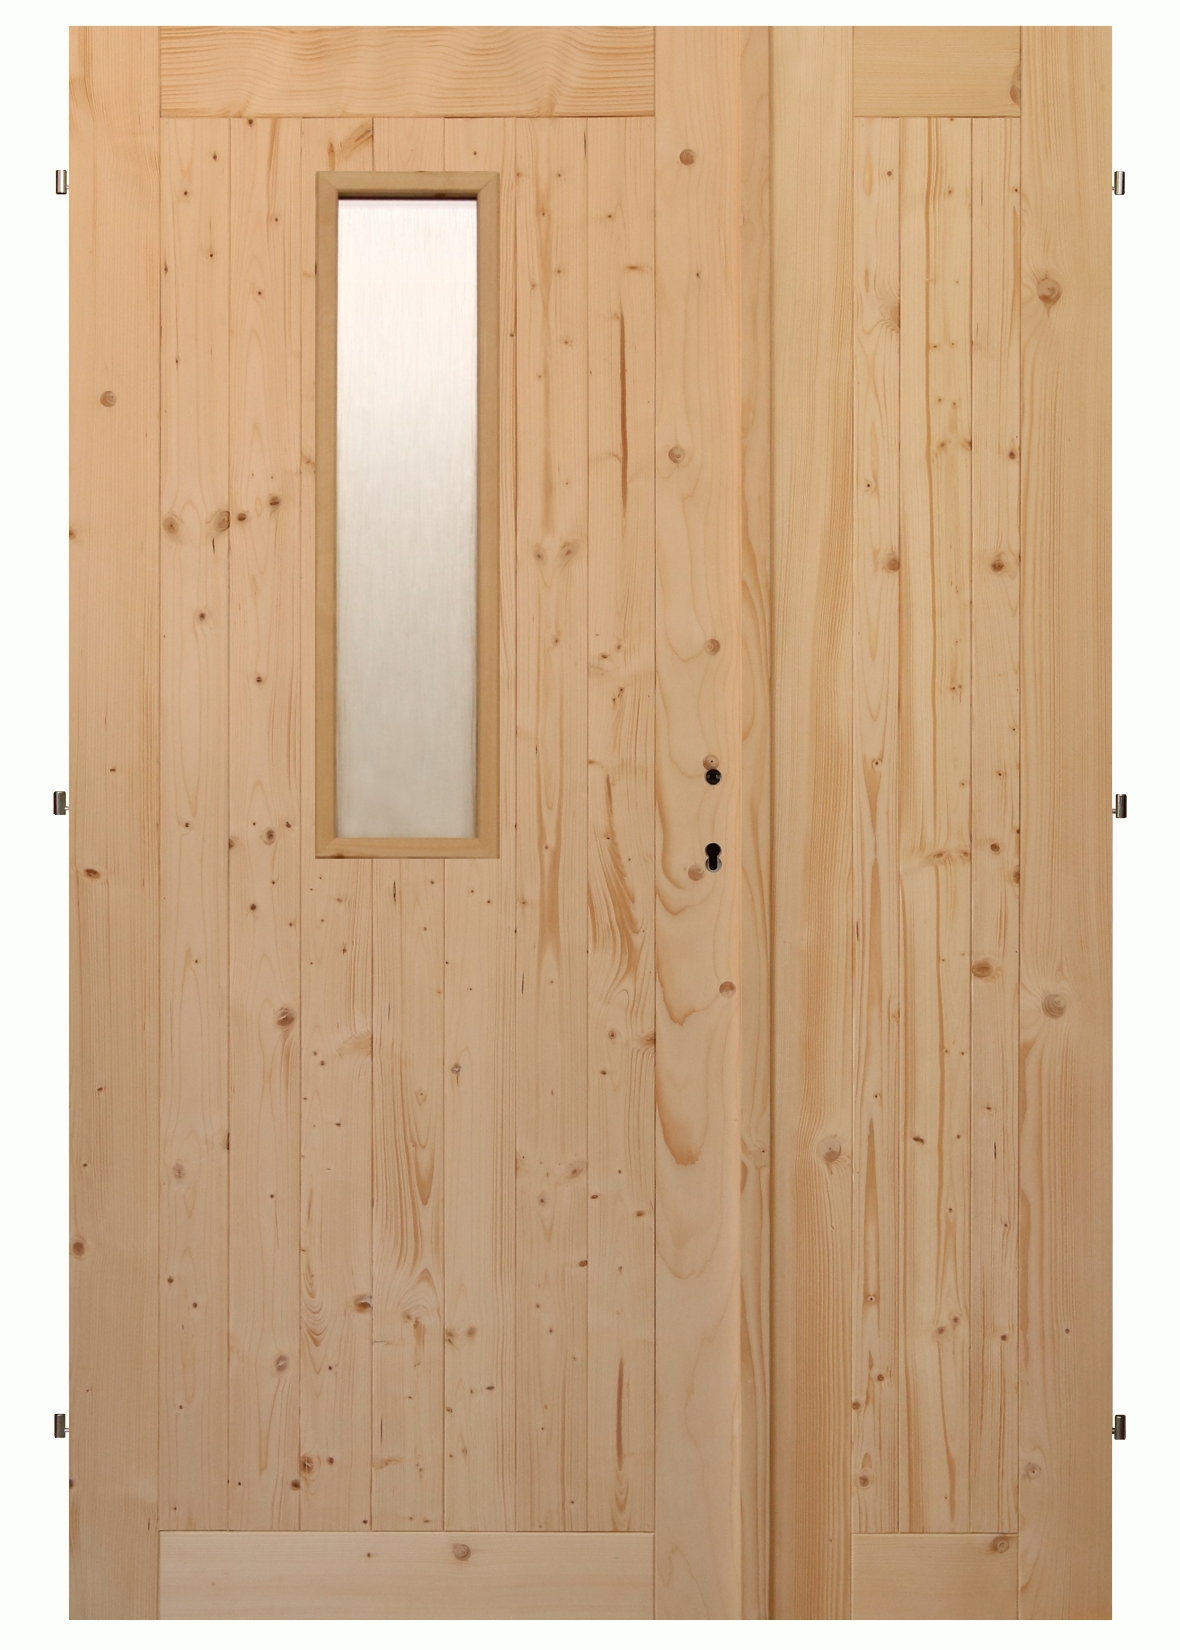 Palubkové dveře dvoukřídlé č.2 (šíře 145cm)